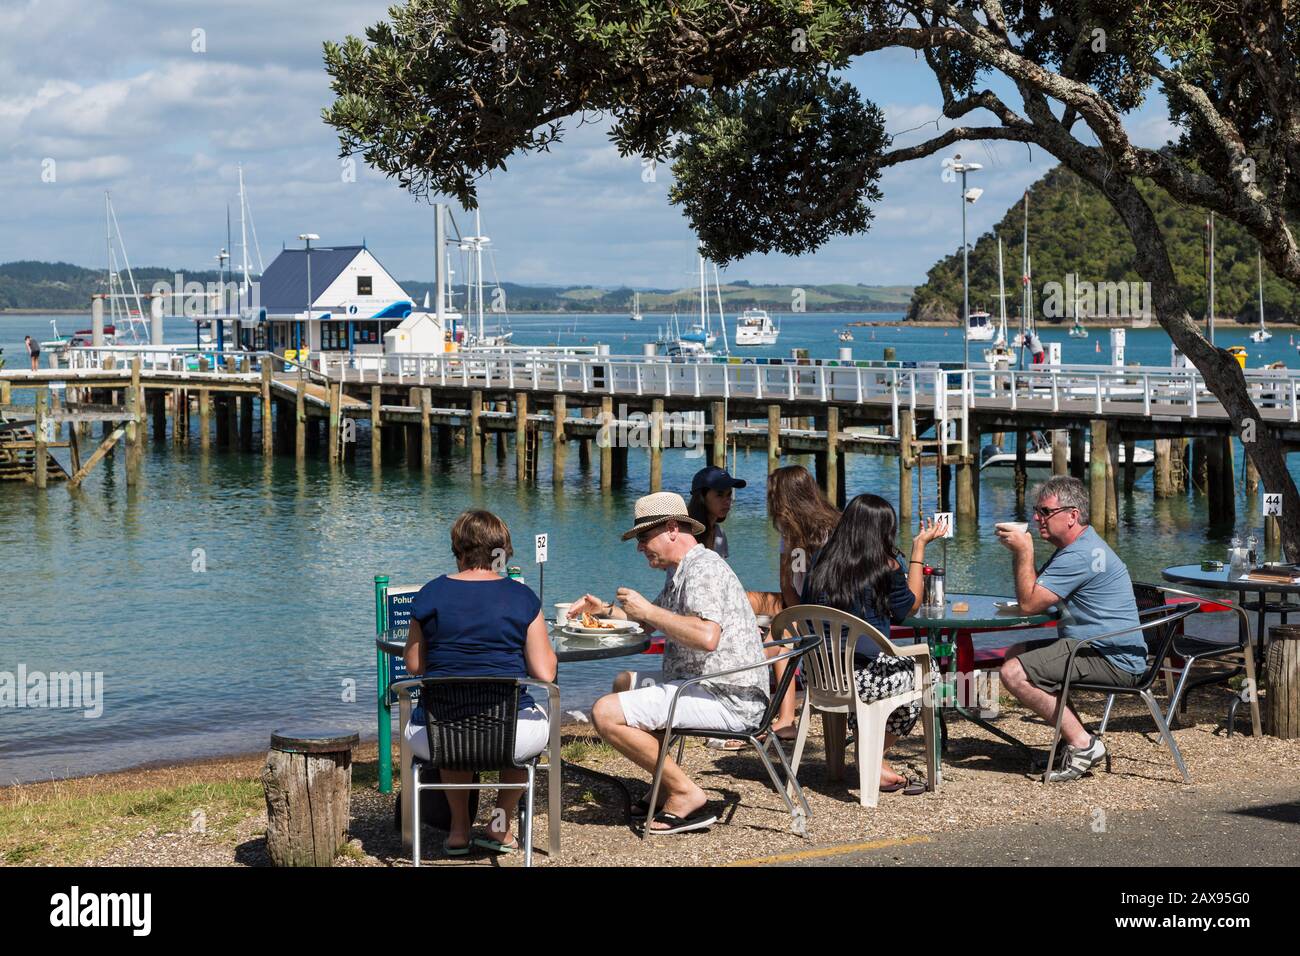 La gente come en la cafetería frente a la playa, Russell, Bay of Islands, Nueva Zelanda Foto de stock